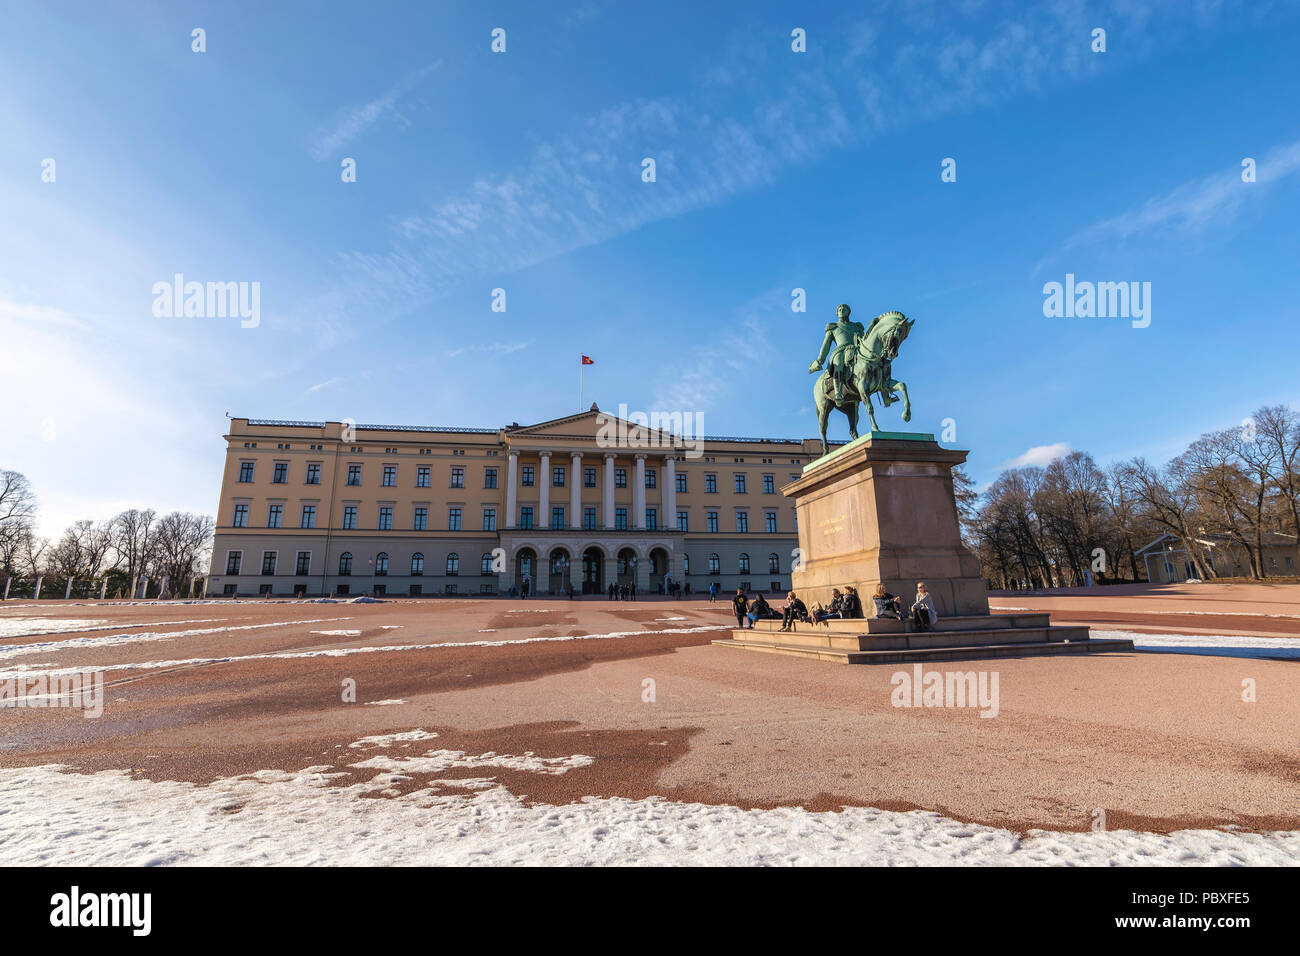 Palais Royal d'Oslo et Charles John statue, Oslo Norvège Banque D'Images